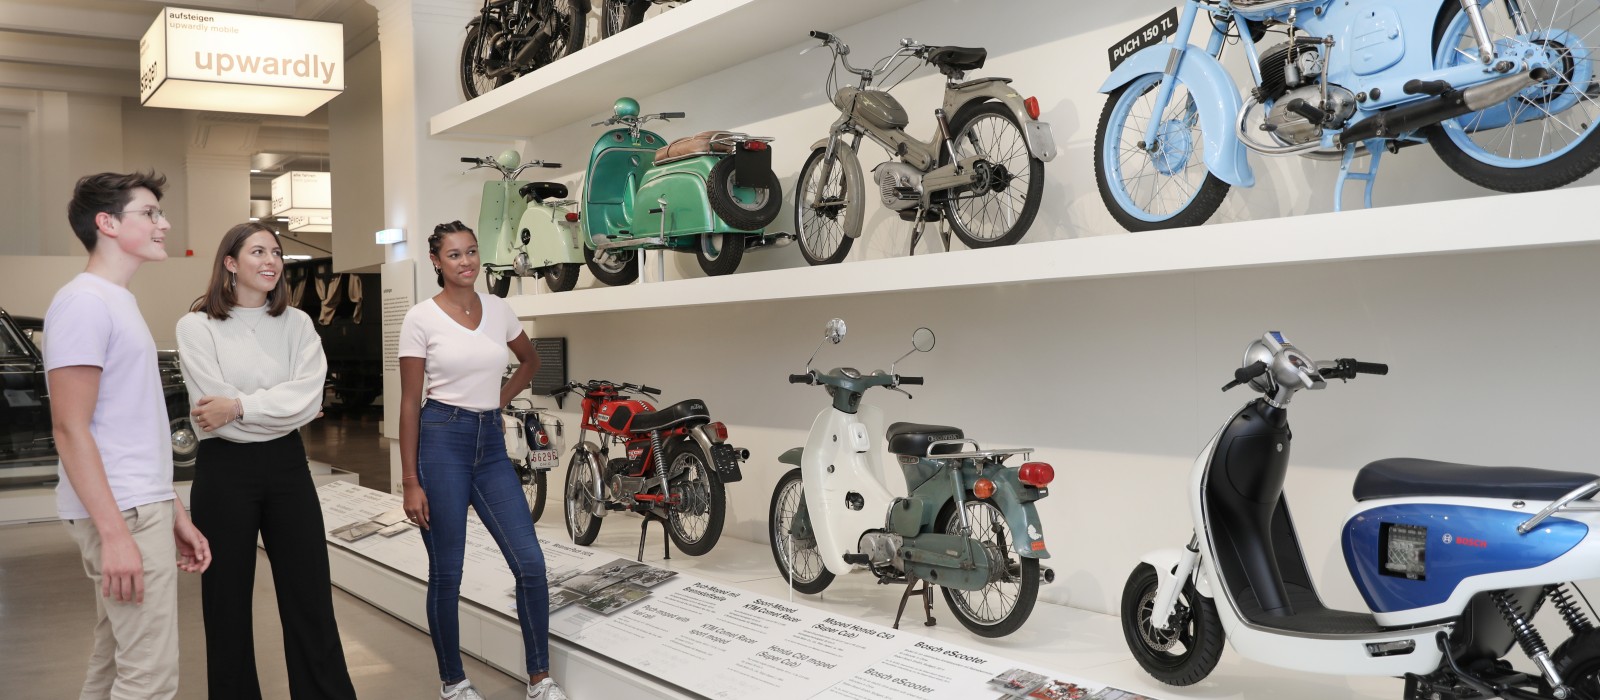 Eine kleine Gruppe Jugendlicher sieht sich in der Ausstellung "Mobilität" verschiedene Mopeds und Motorräder an. : 